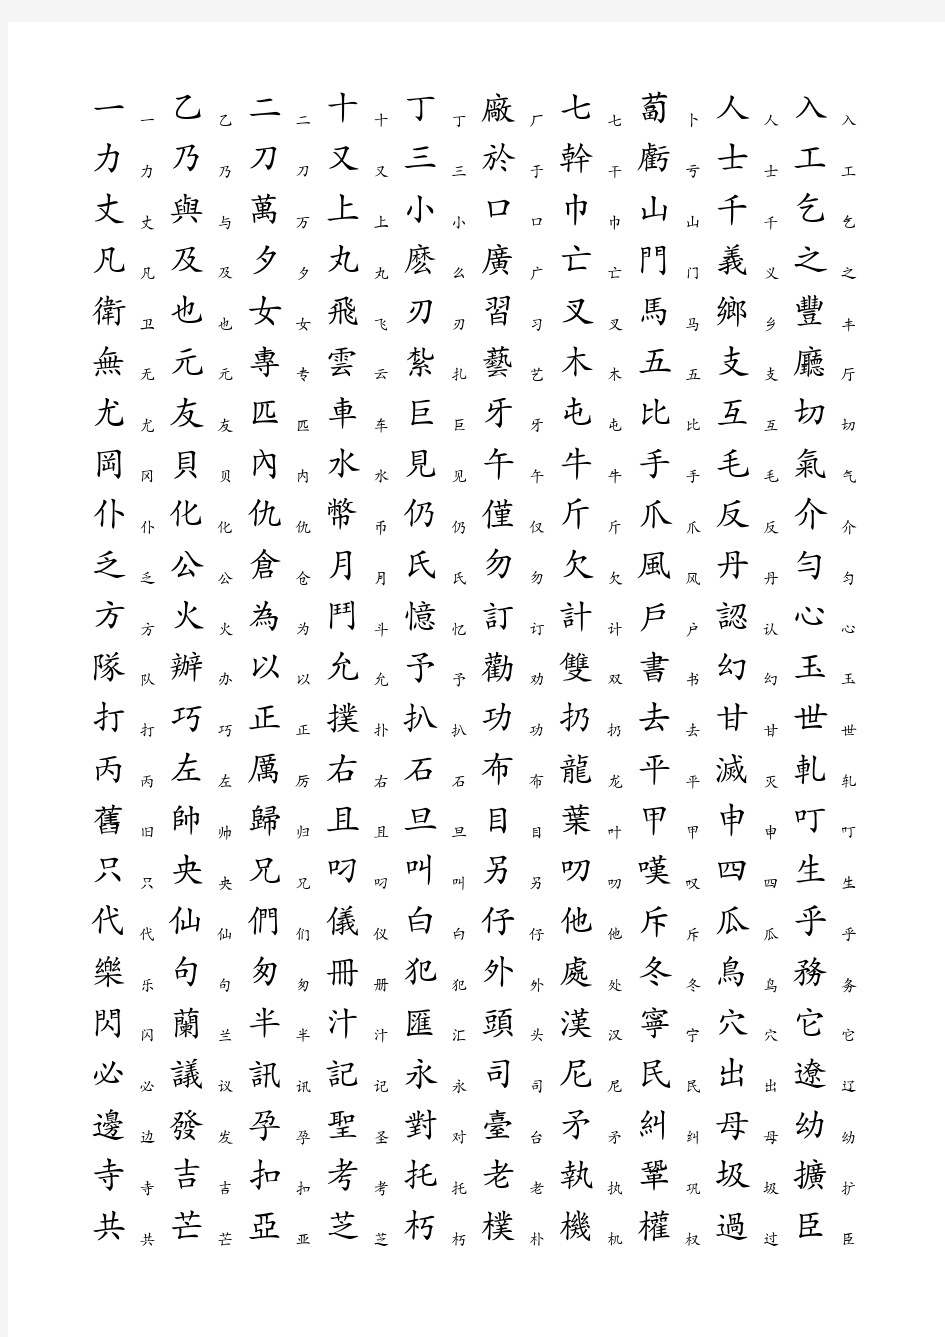 3500个常用汉字简繁对照表(1)